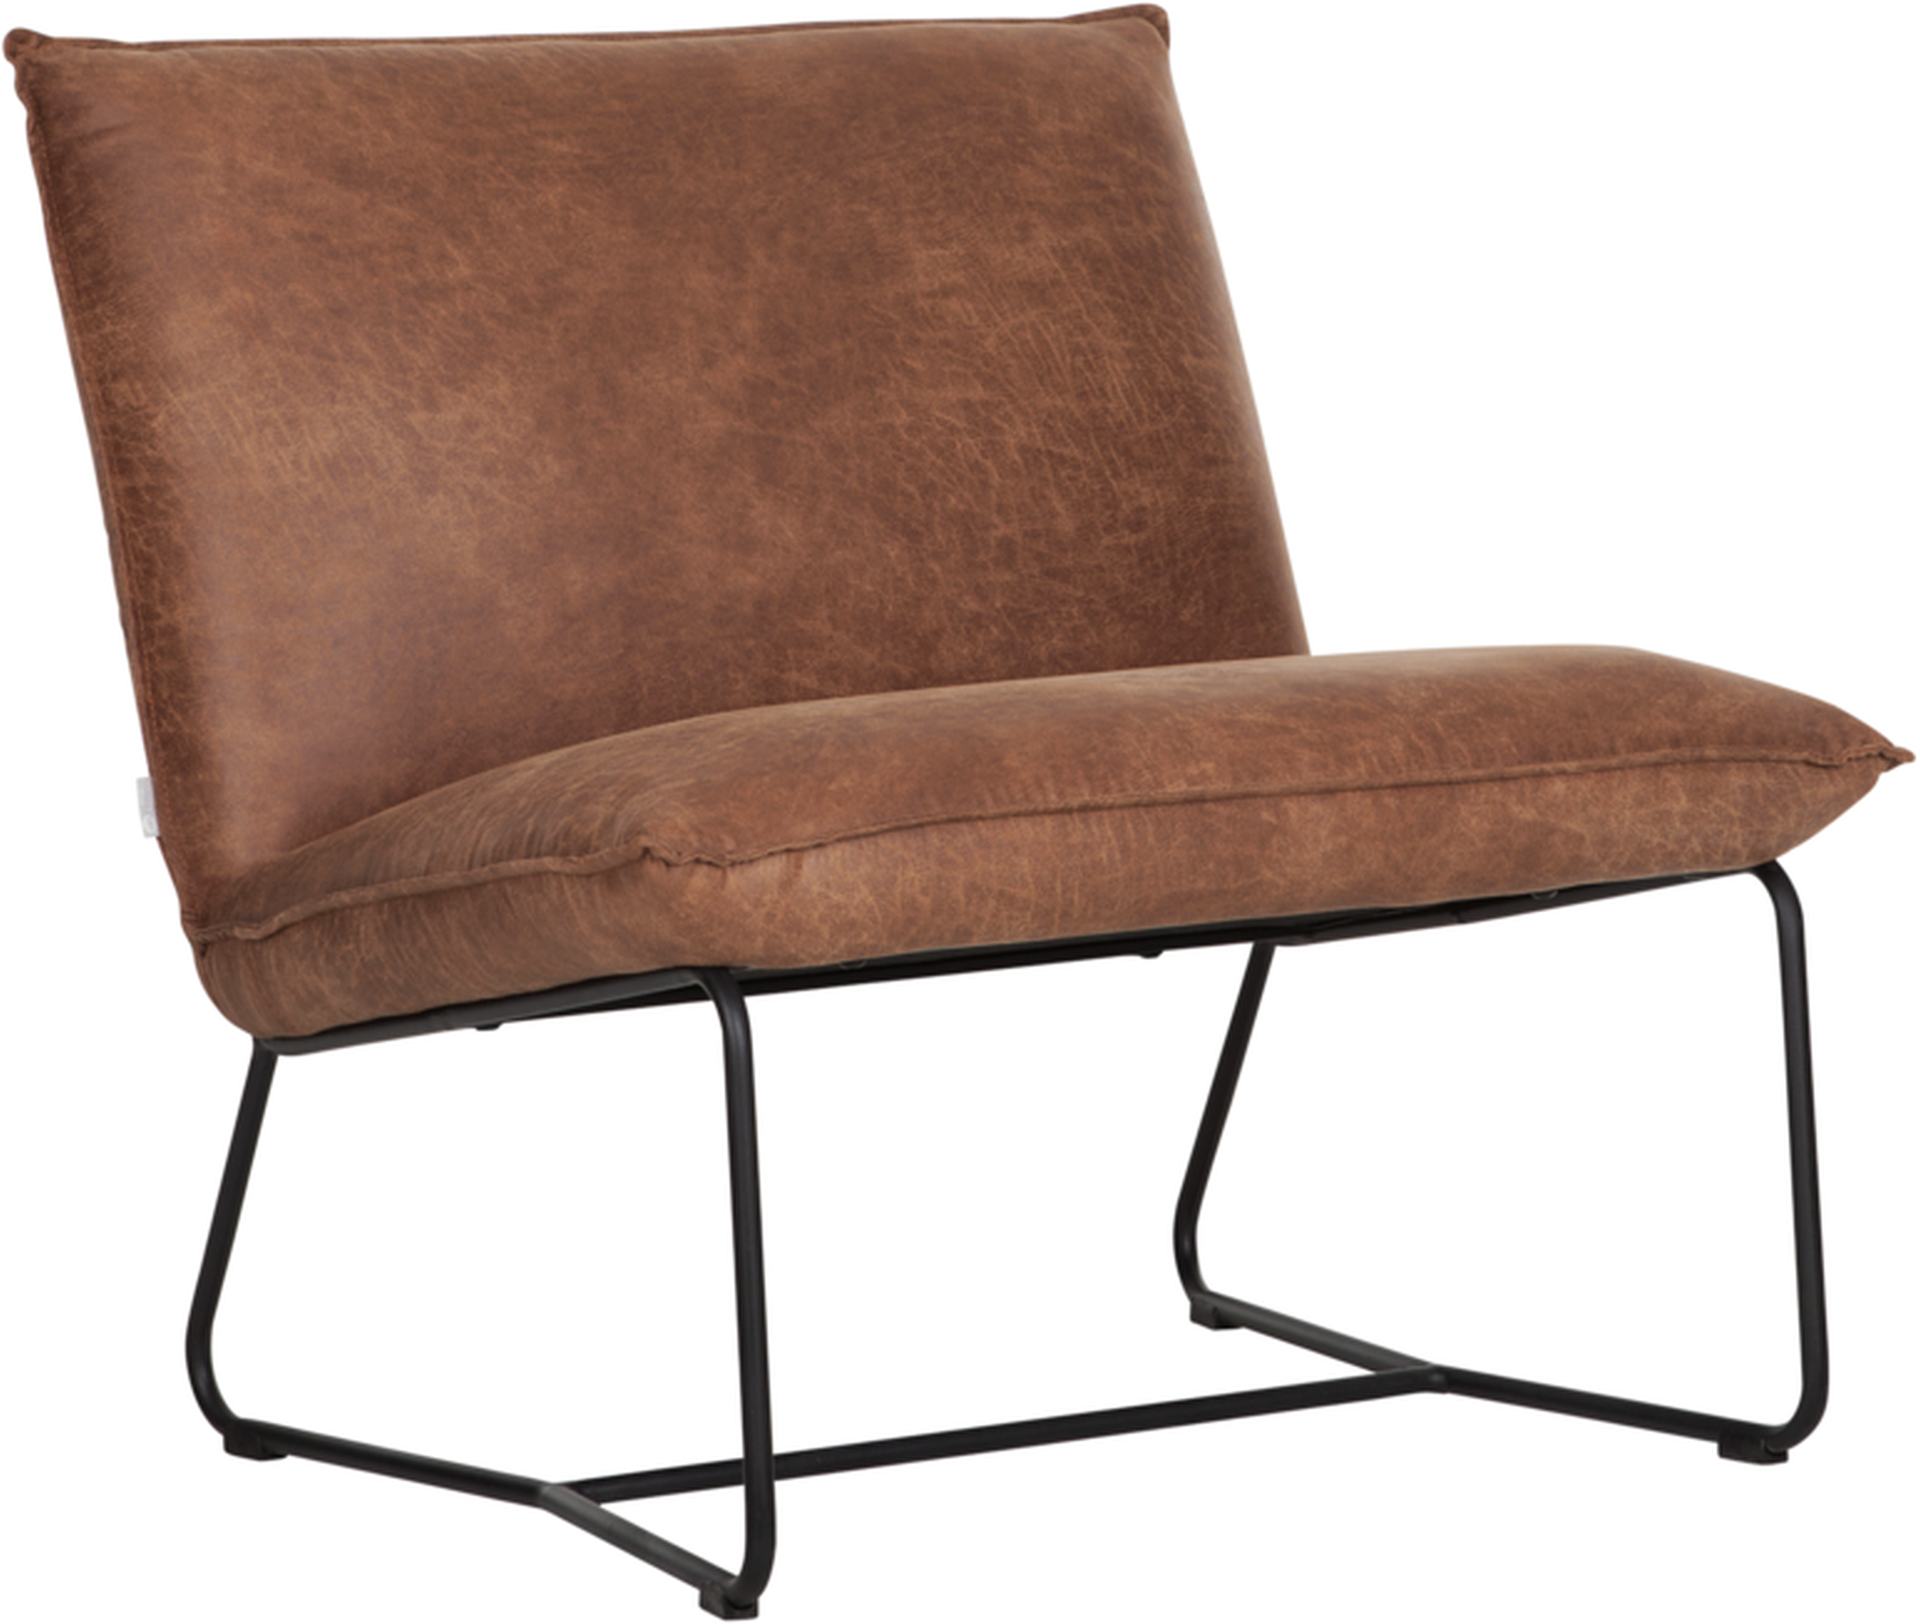 Der bequeme Sessel Delaware überzeugt mit seinem modernem Design.Gefertigt wurde er aus recyceltem Leder, welches einen Cognac Farbton besitzt. Das Gestell des Sessels ist aus Metall und ist Schwarz.